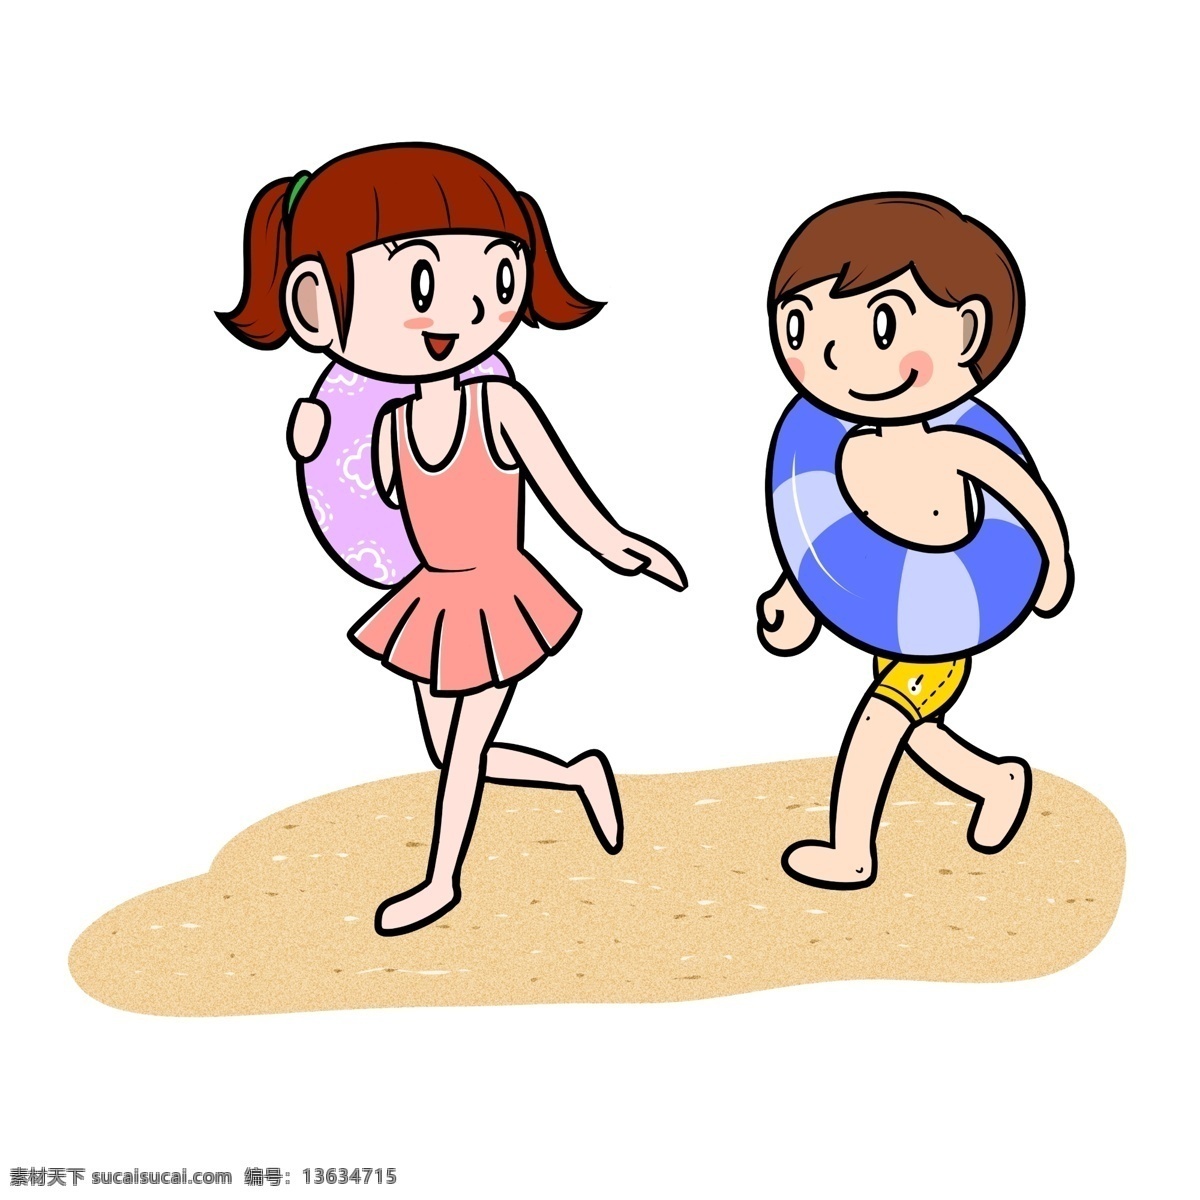 卡通 夏季 儿童 沙滩 追 跑 透明 底 夏天 玩耍 海边 海滩 海边人物 夏季人物 夏天人物 卡通人物 卡通夏季